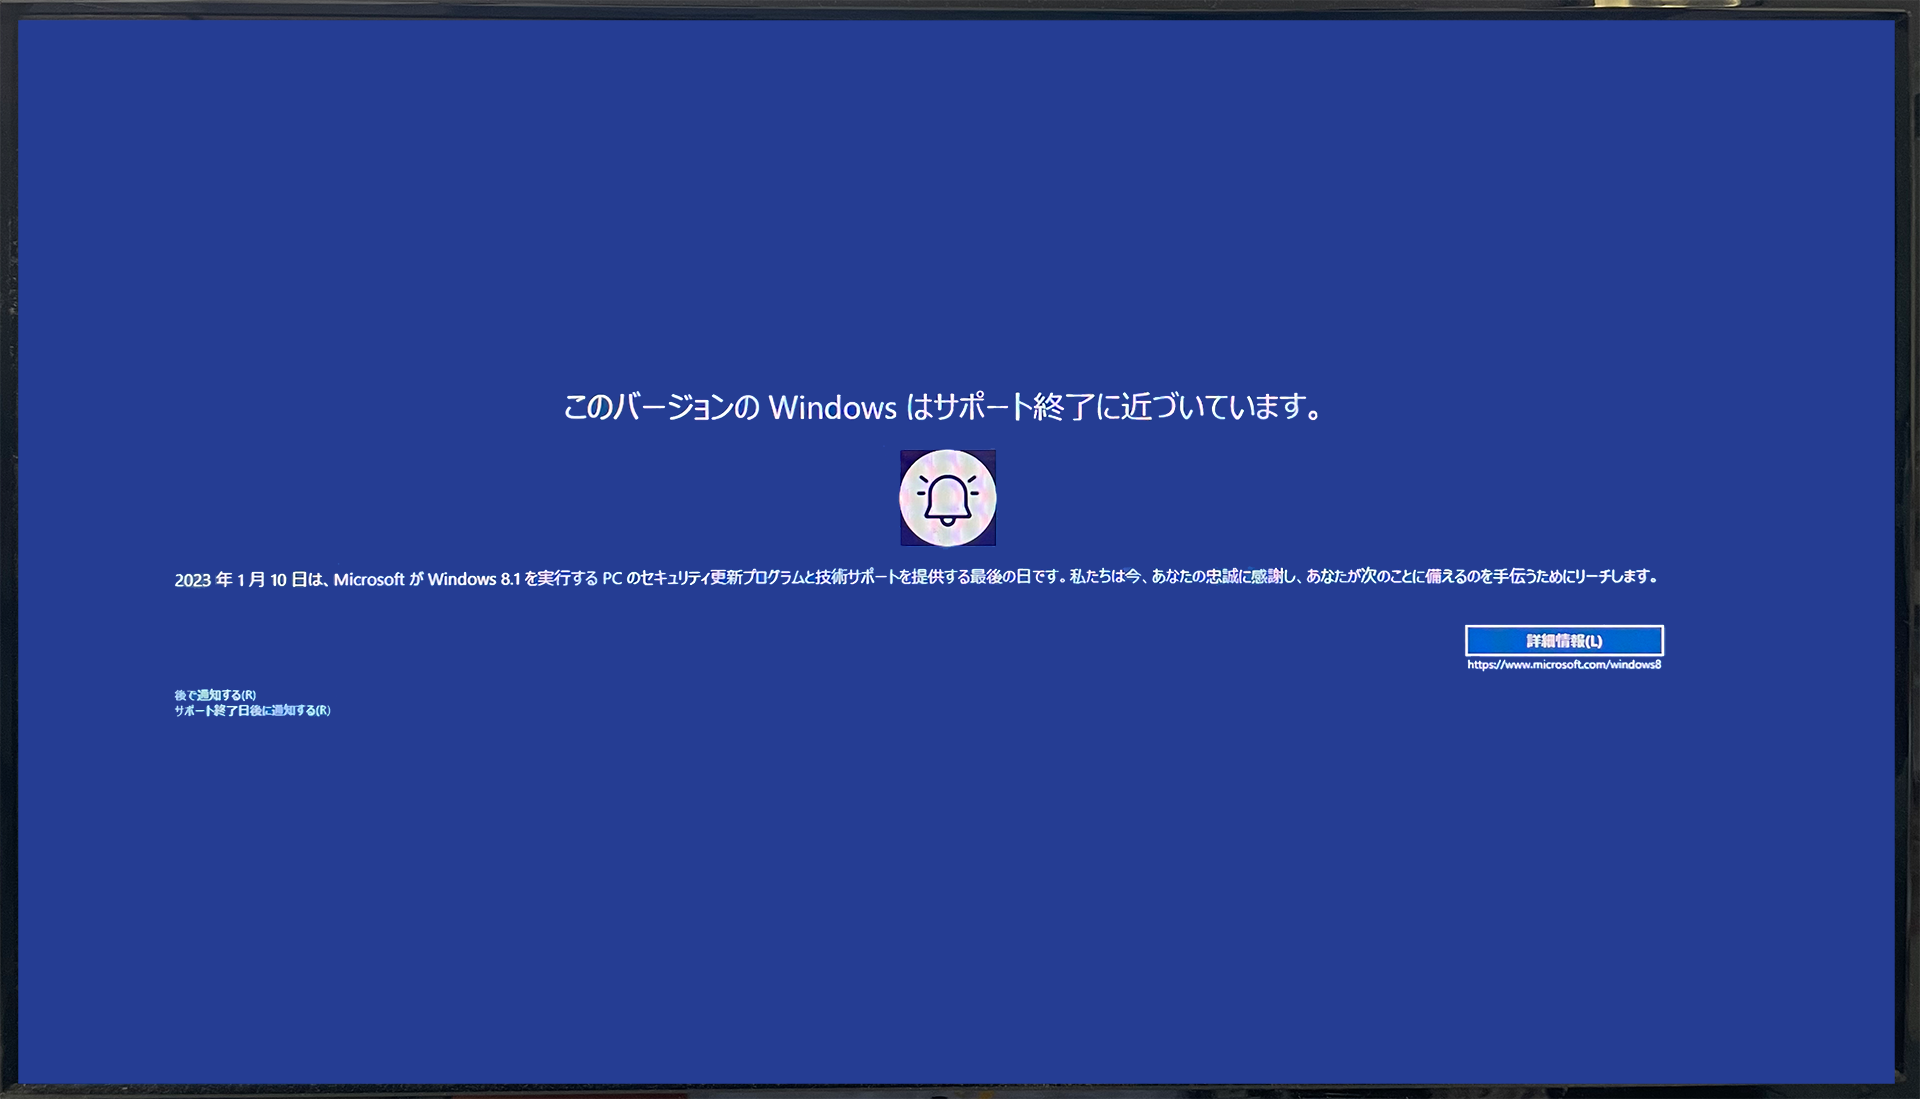 このバージョンの Windows はサポート終了に近づいています。Windows8.1サポート終了のお知らせ。